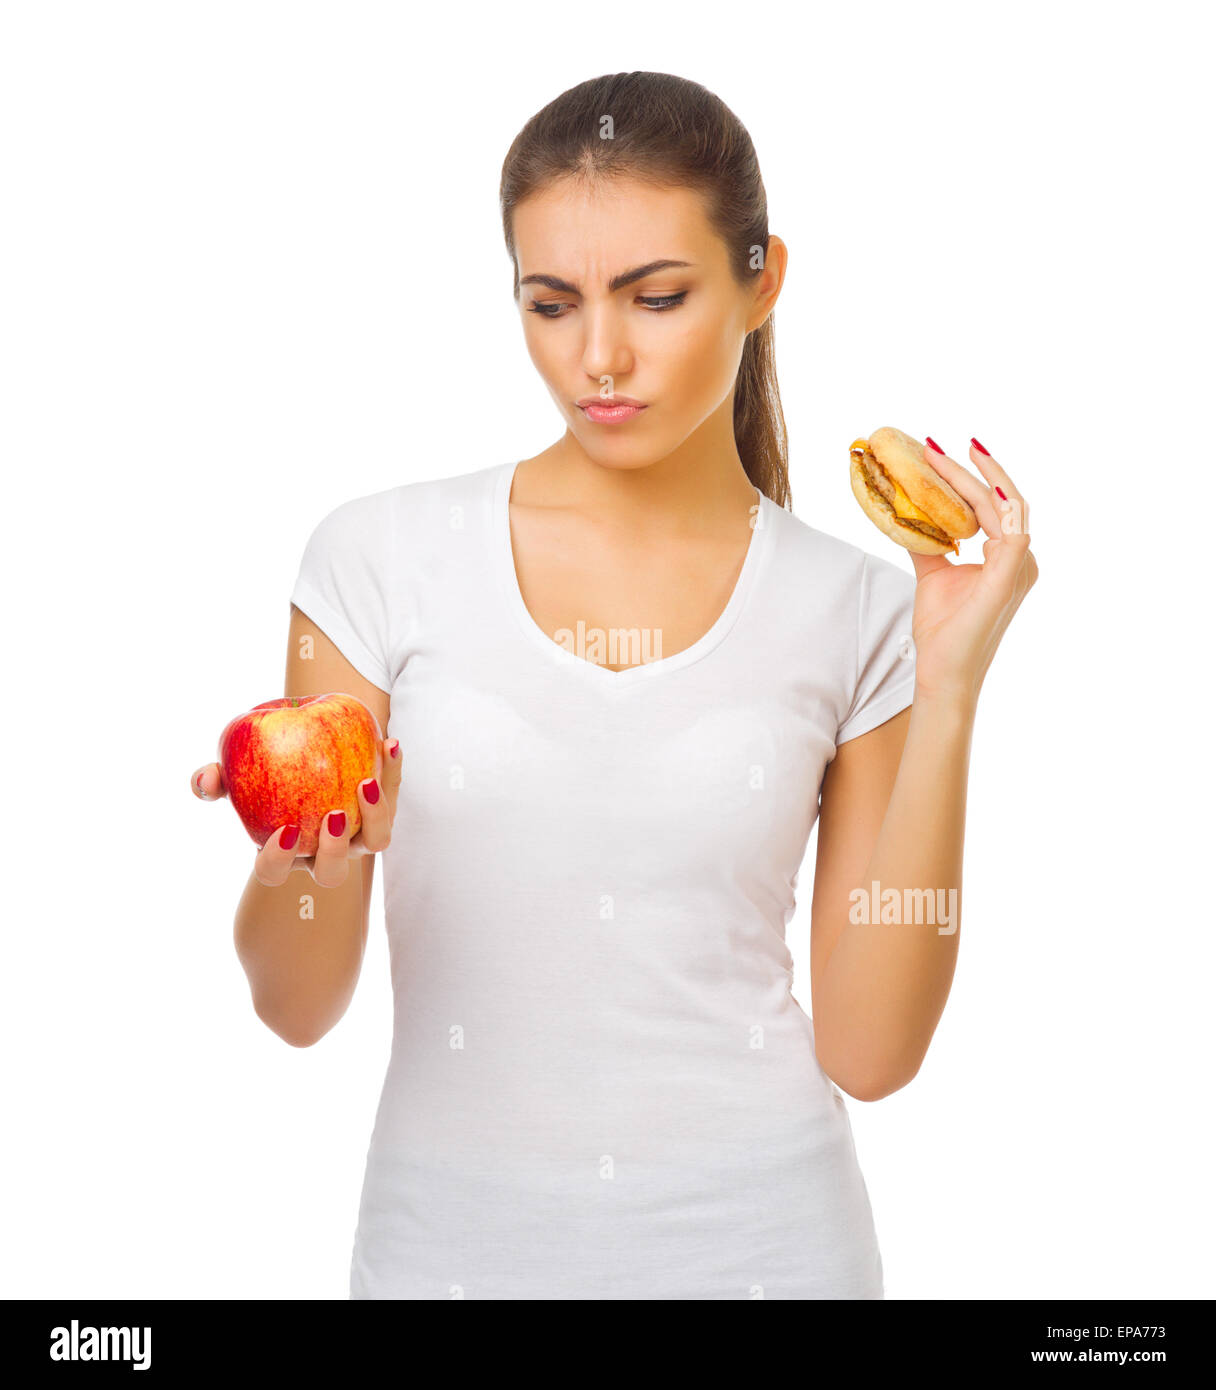 Jeune fille doutant avec apple et isolées du hamburger Banque D'Images